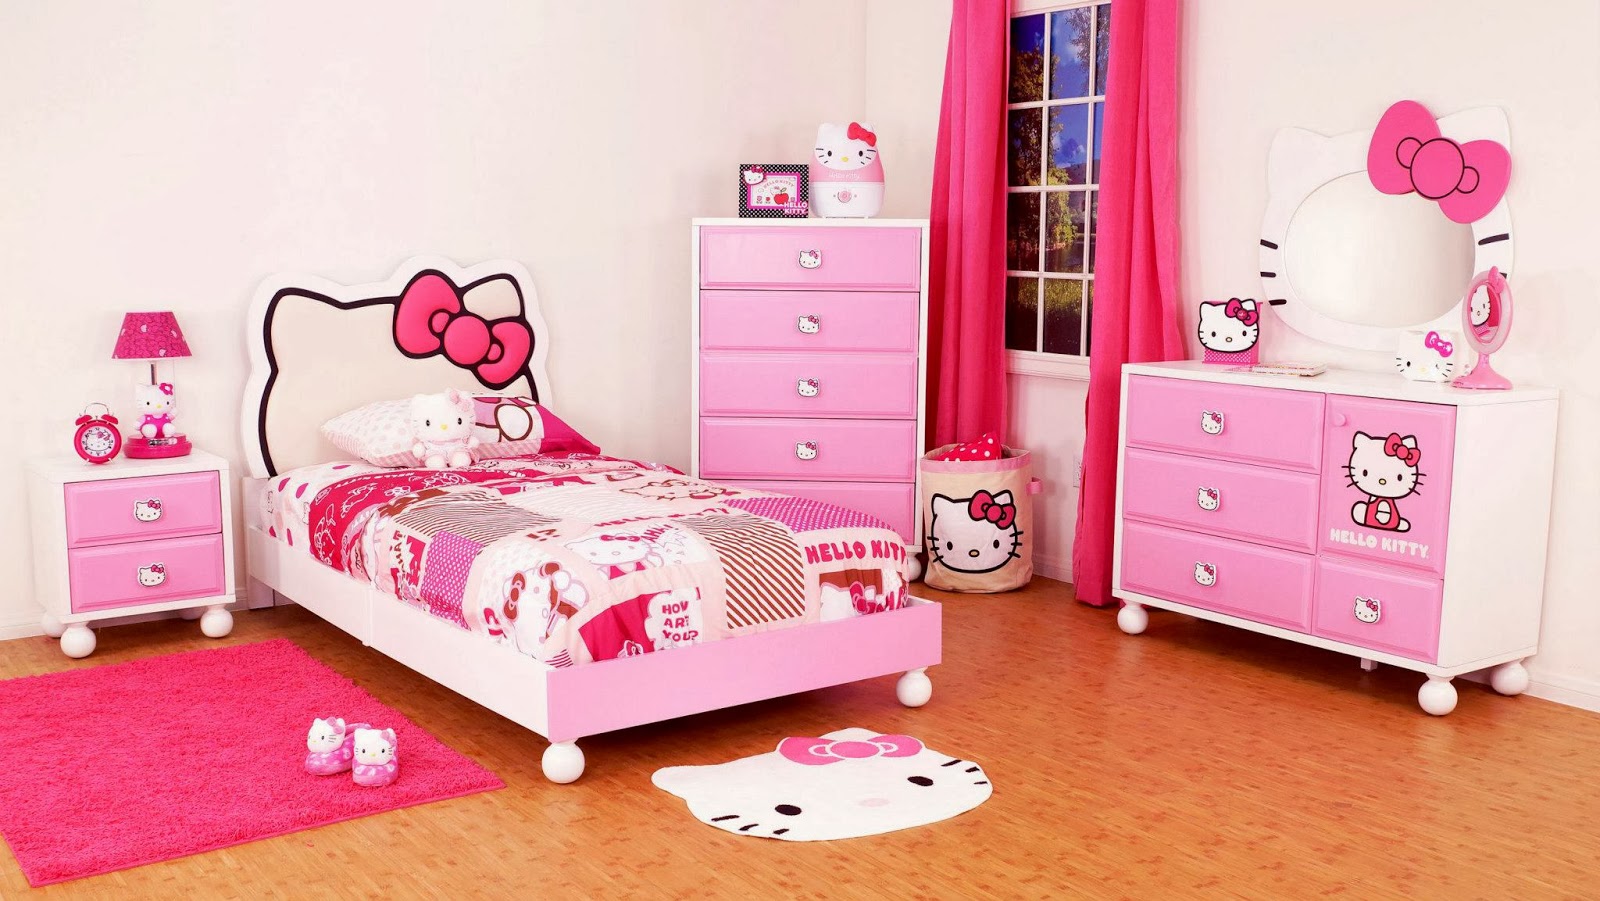   ada sejumlah contoh kamar tidur anak yang mengambil desain
kamar 